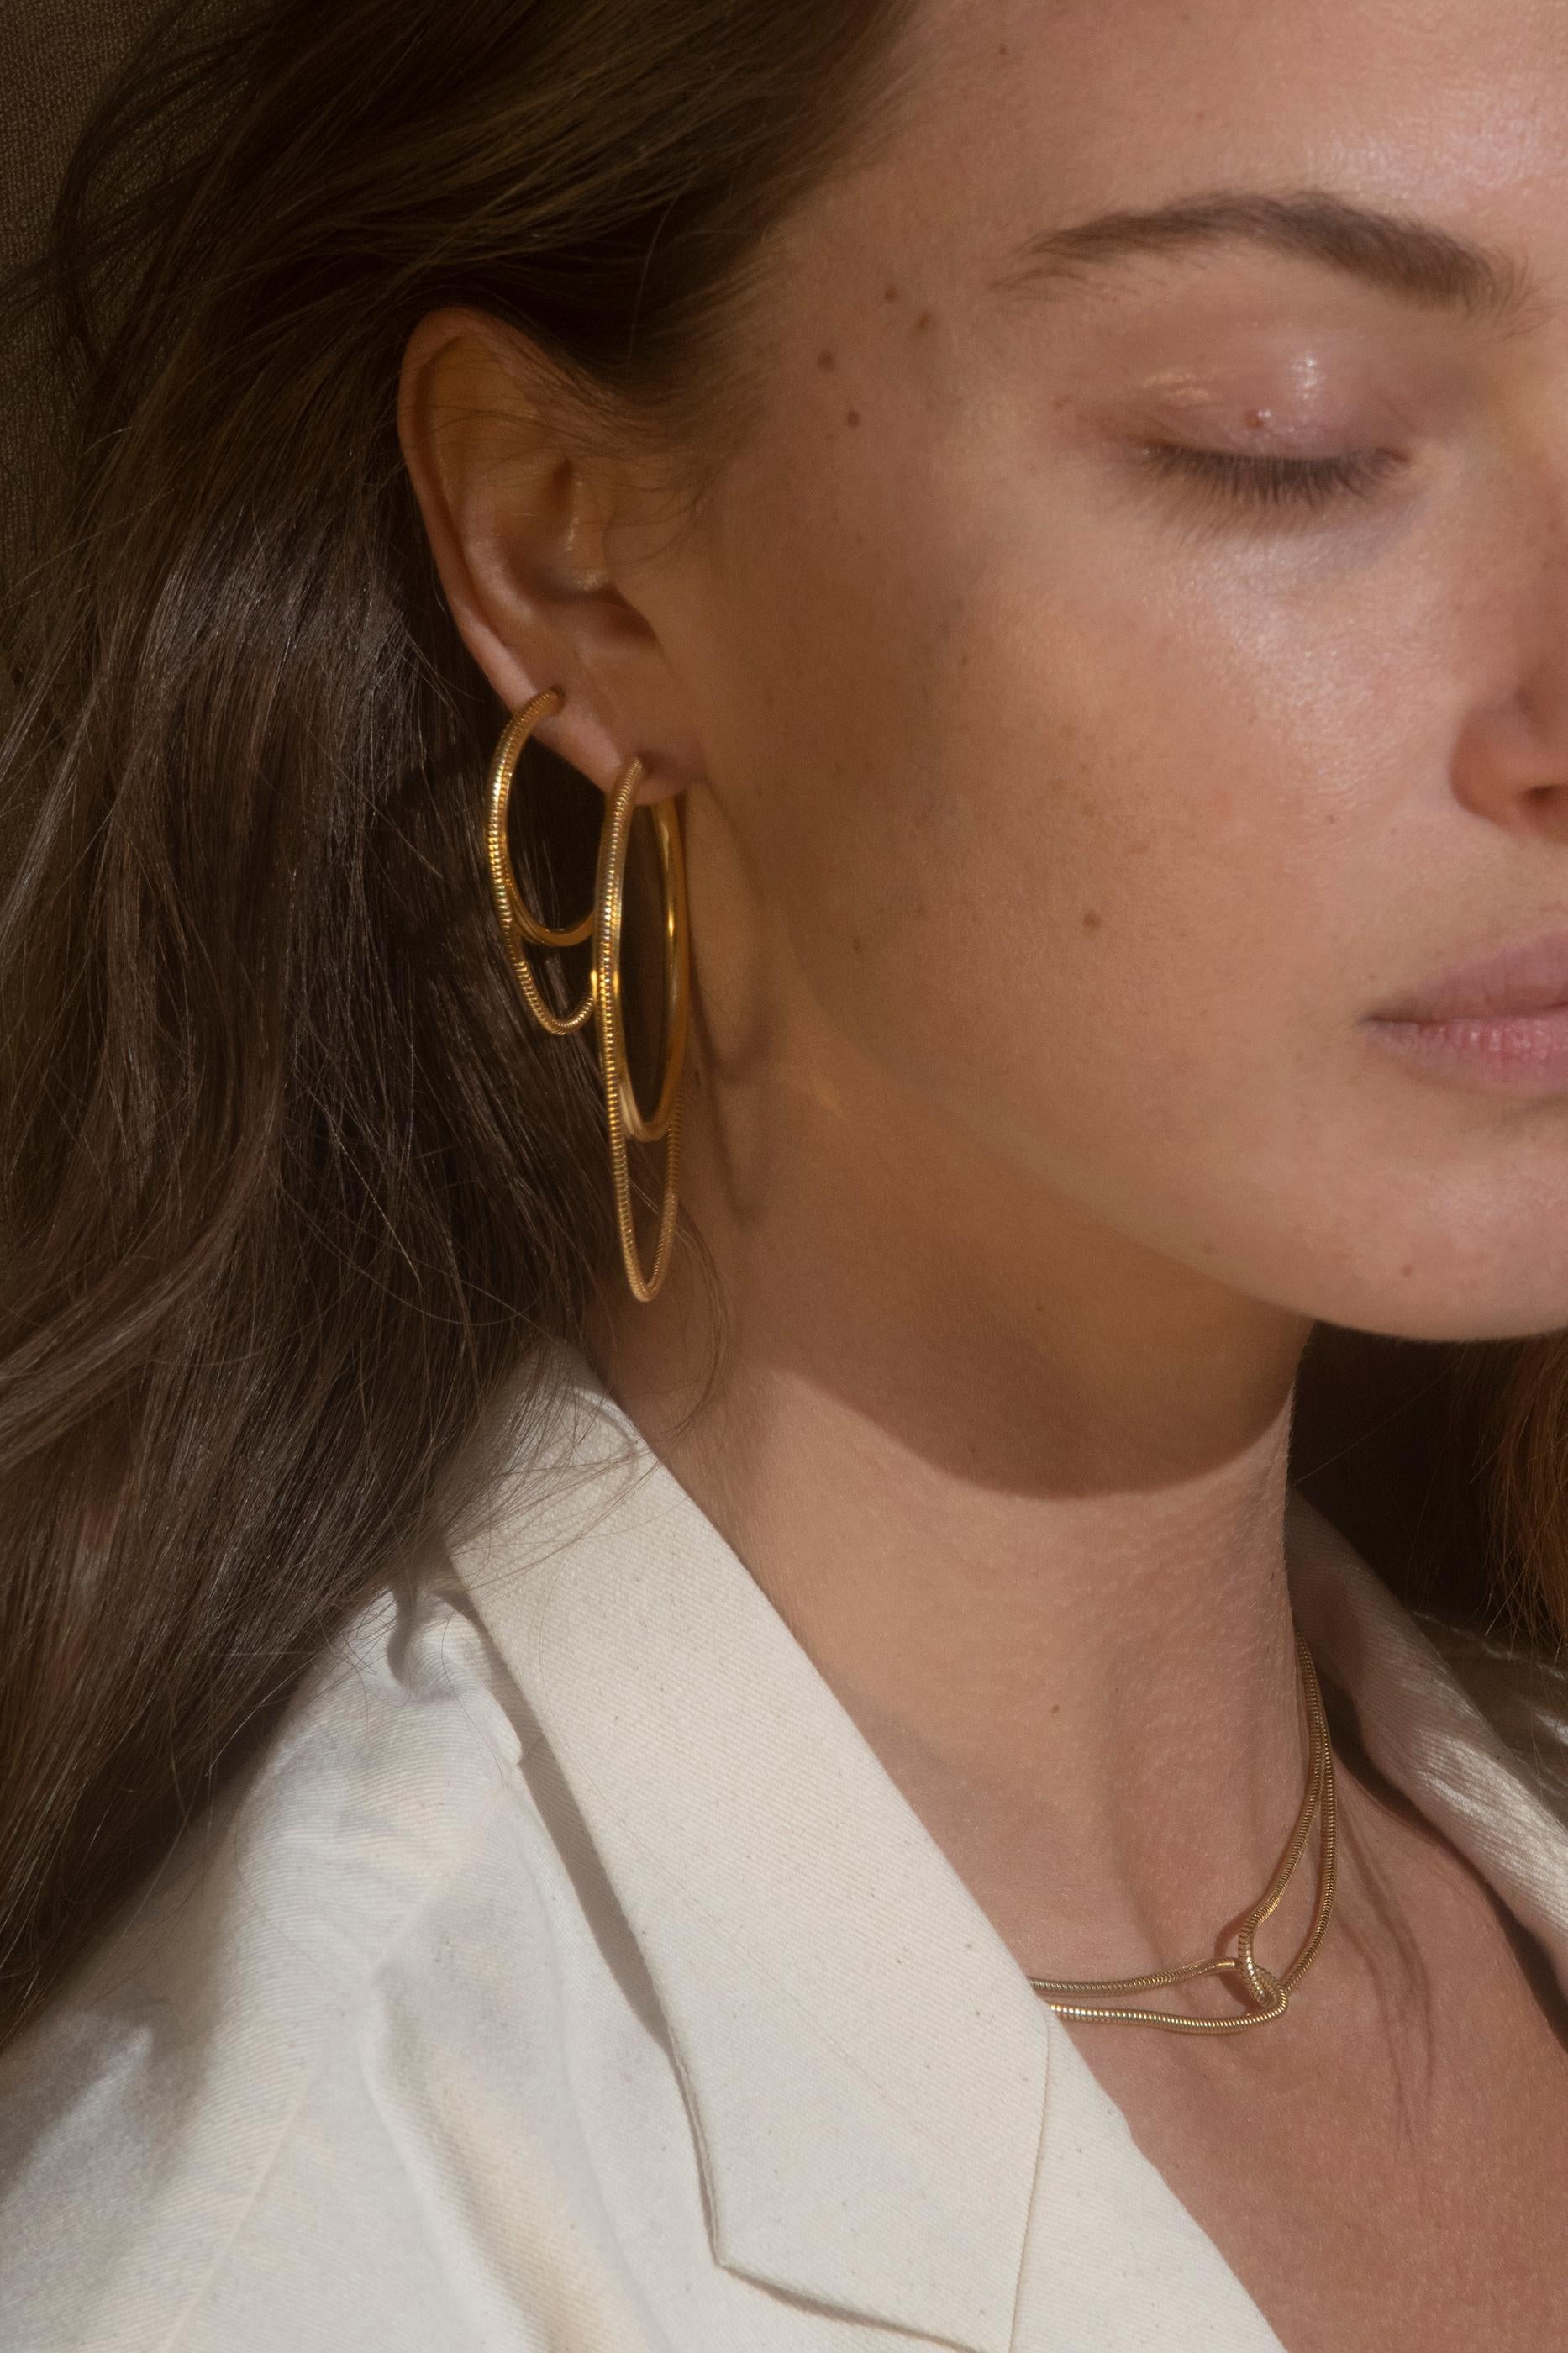 h&m snake earrings